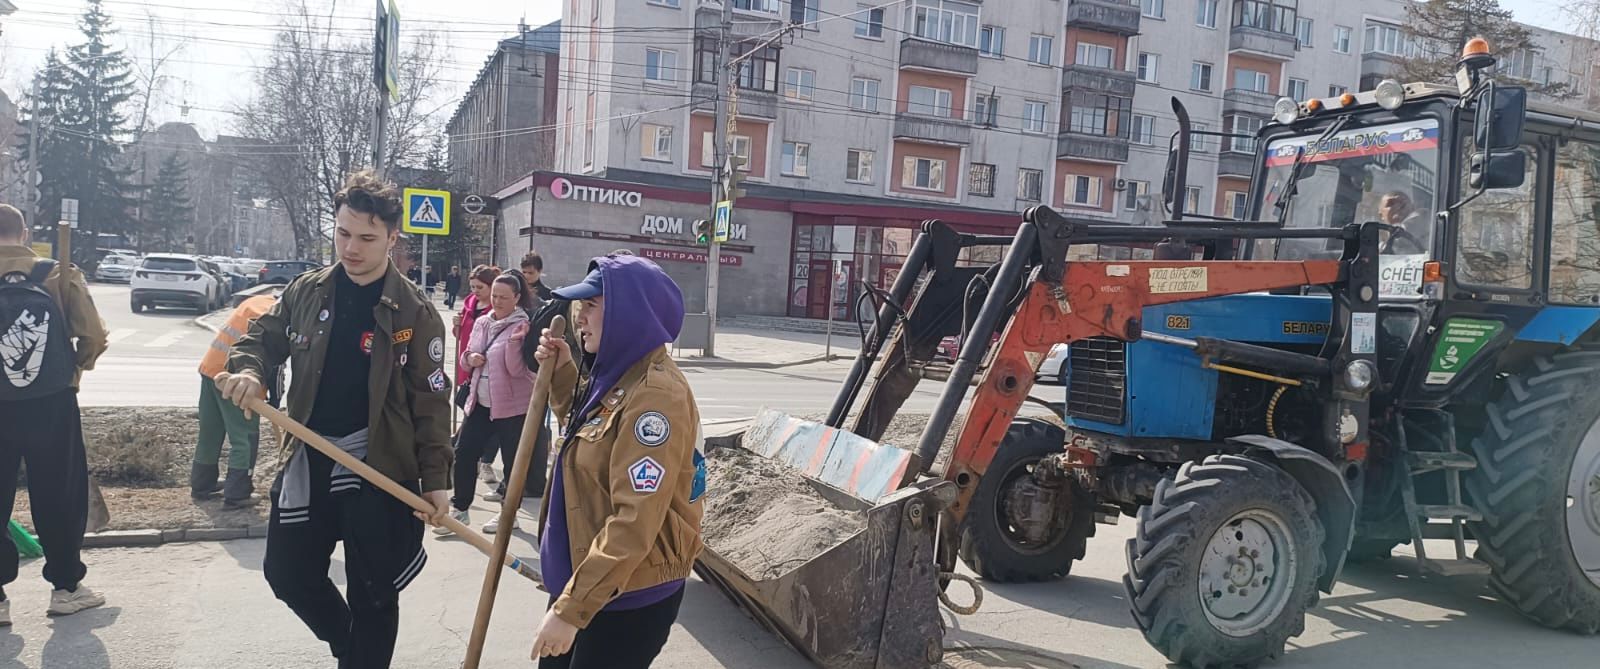 Студенты Алтайского государственного медицинского университета приняли участие в экологической акции